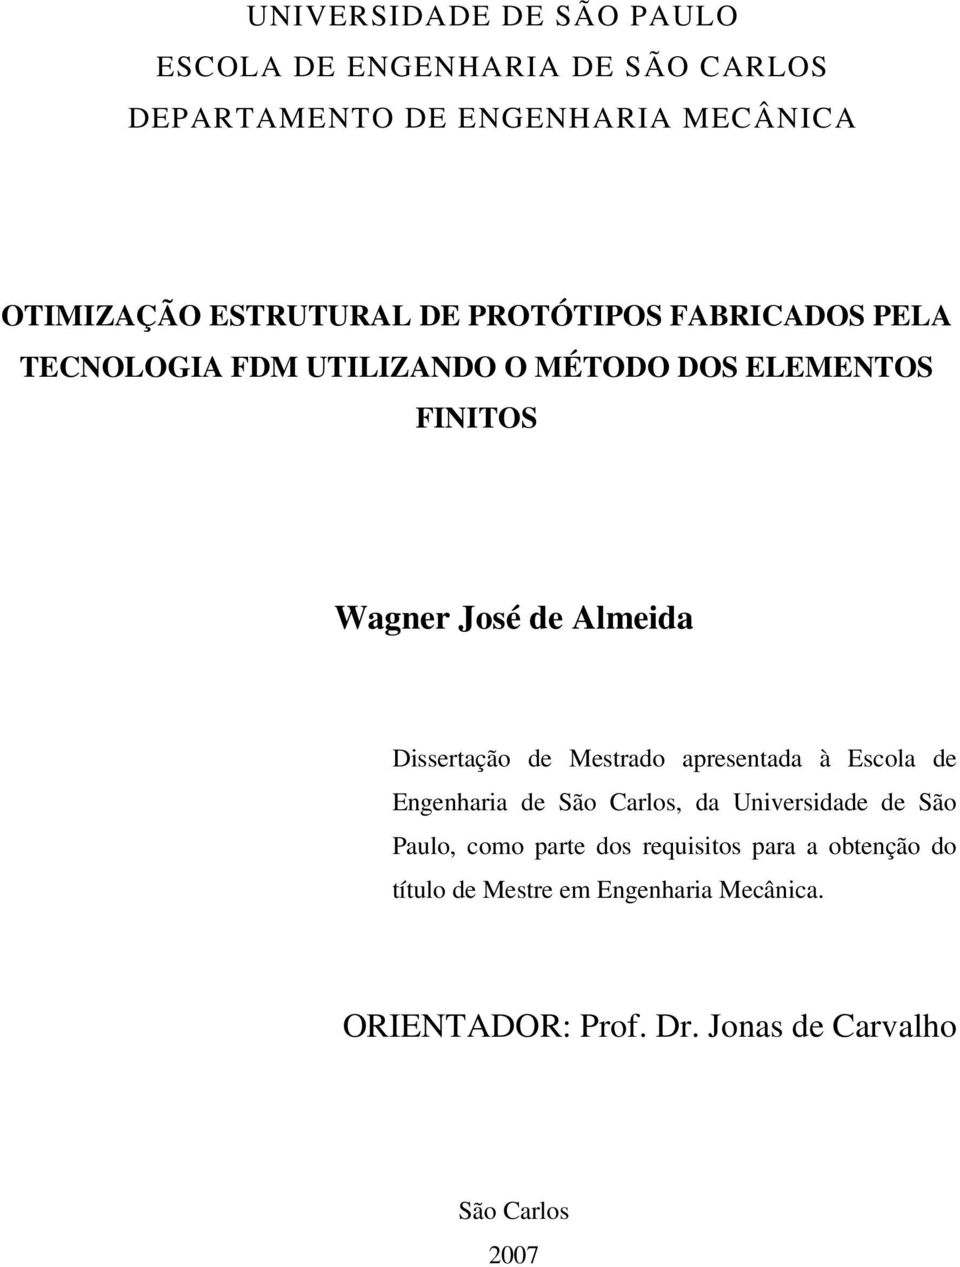 Dissertação de Mestrado apresentada à Escola de Engenharia de São Carlos, da Universidade de São Paulo, como parte dos